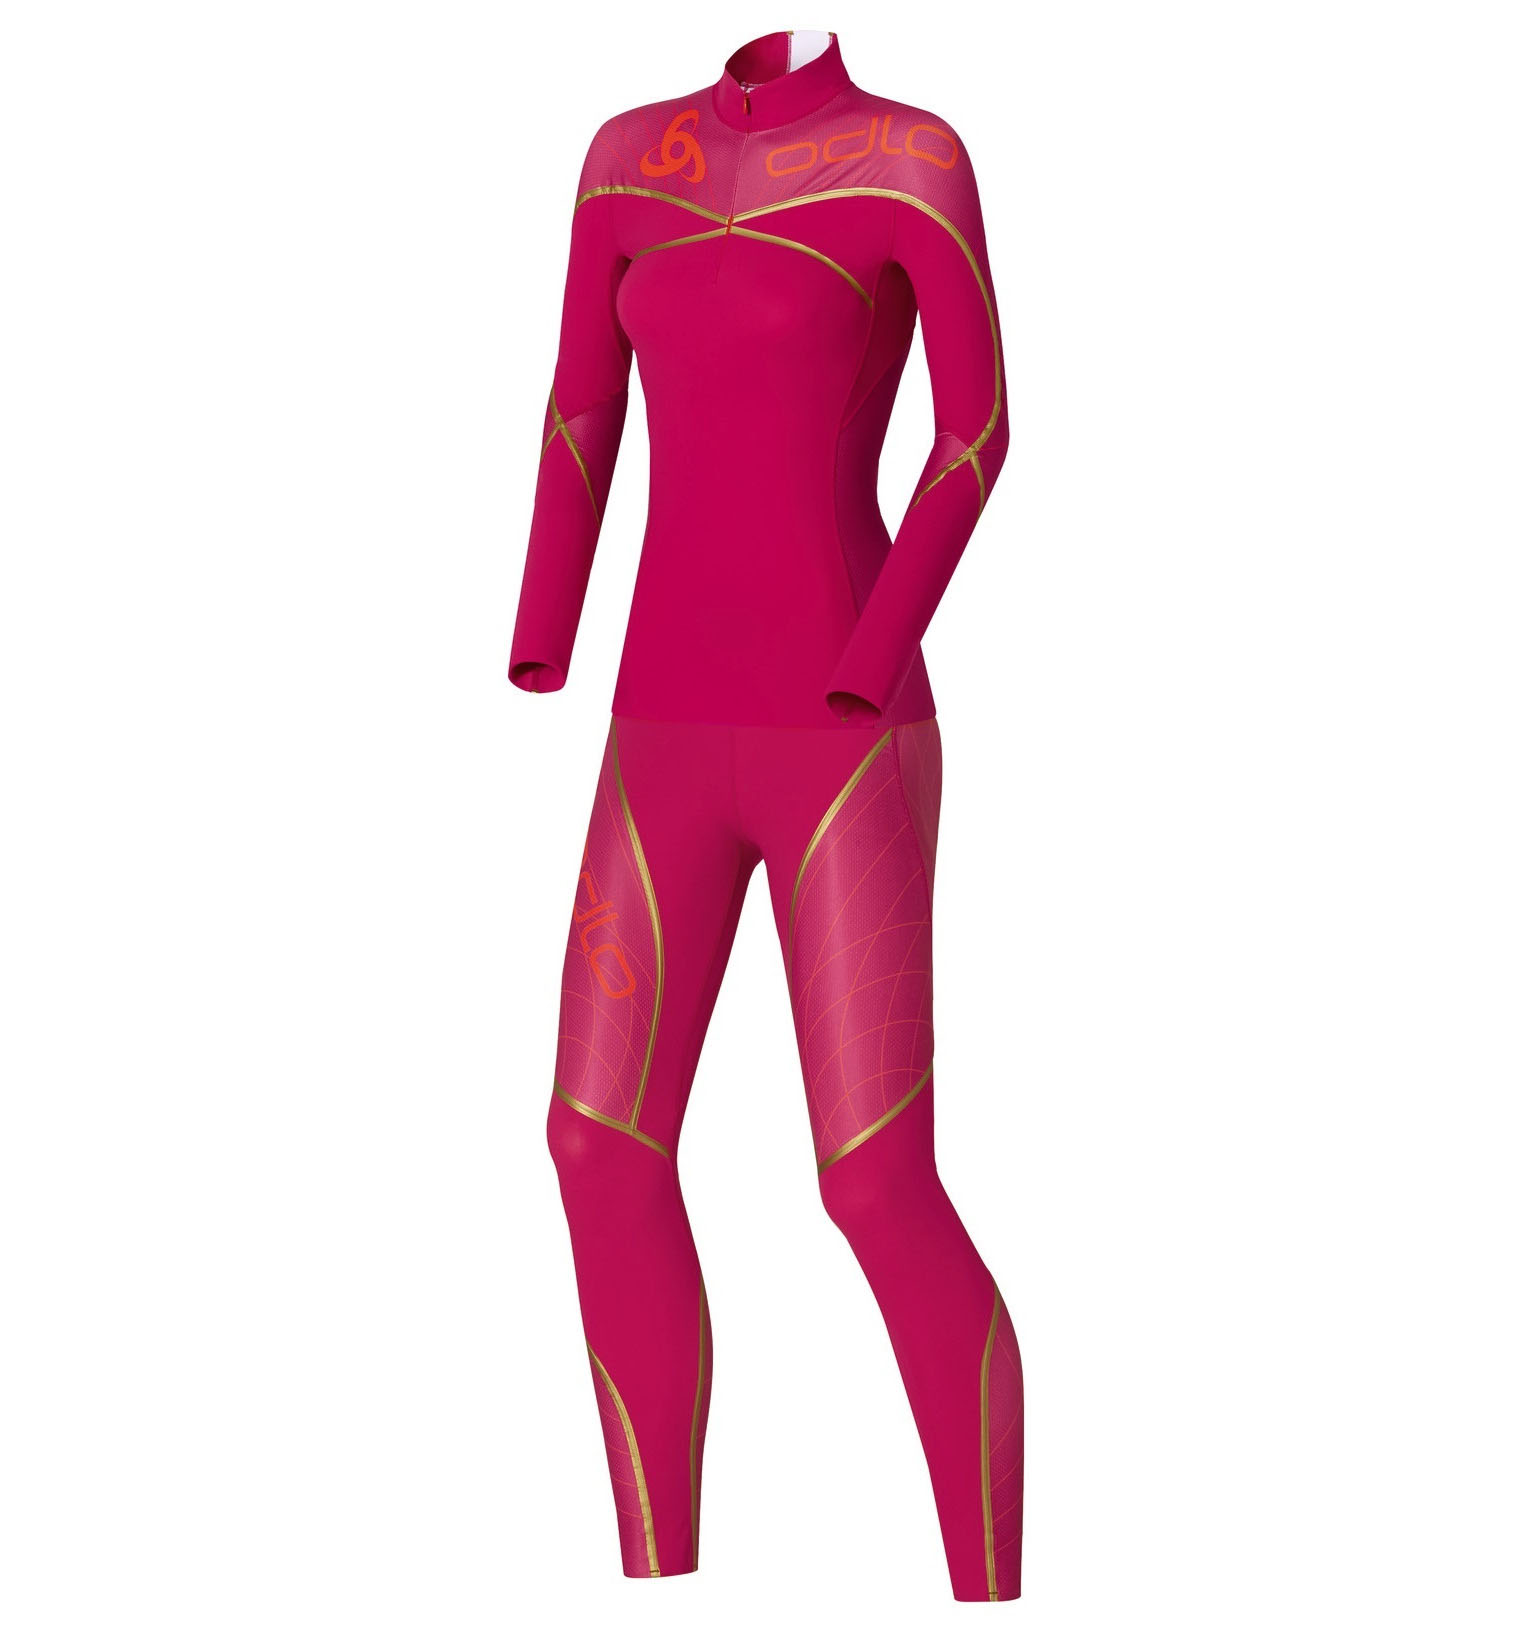 ODLO Гоночный комбинезон AEROFLOW женский, артикул 630141, цвет розовый, характеристики, фото